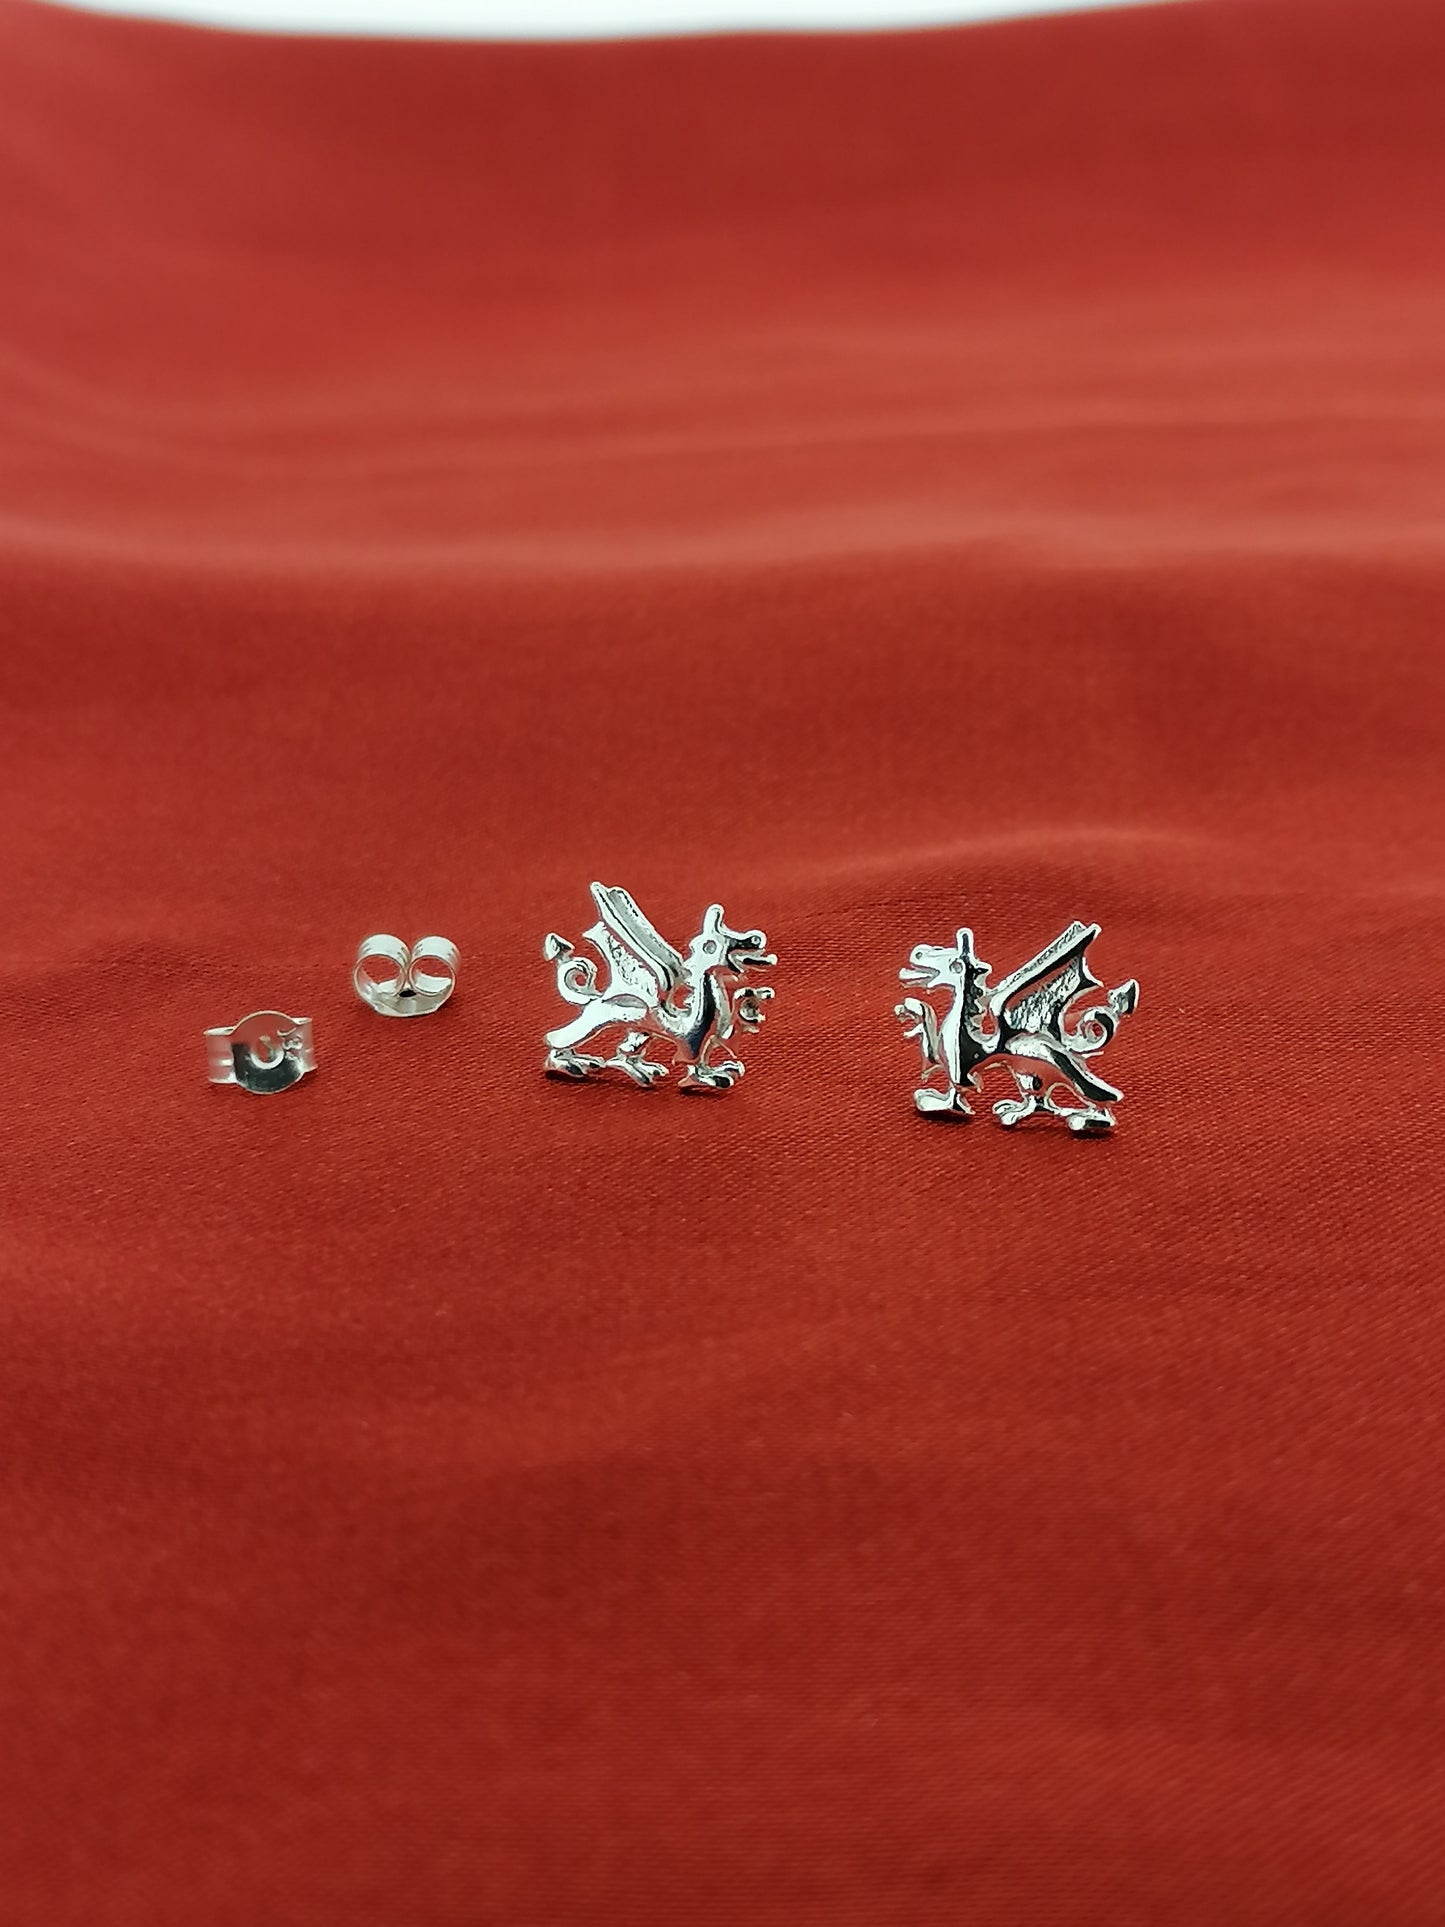 Welsh Dragon Stud earrings Sterling Silver 